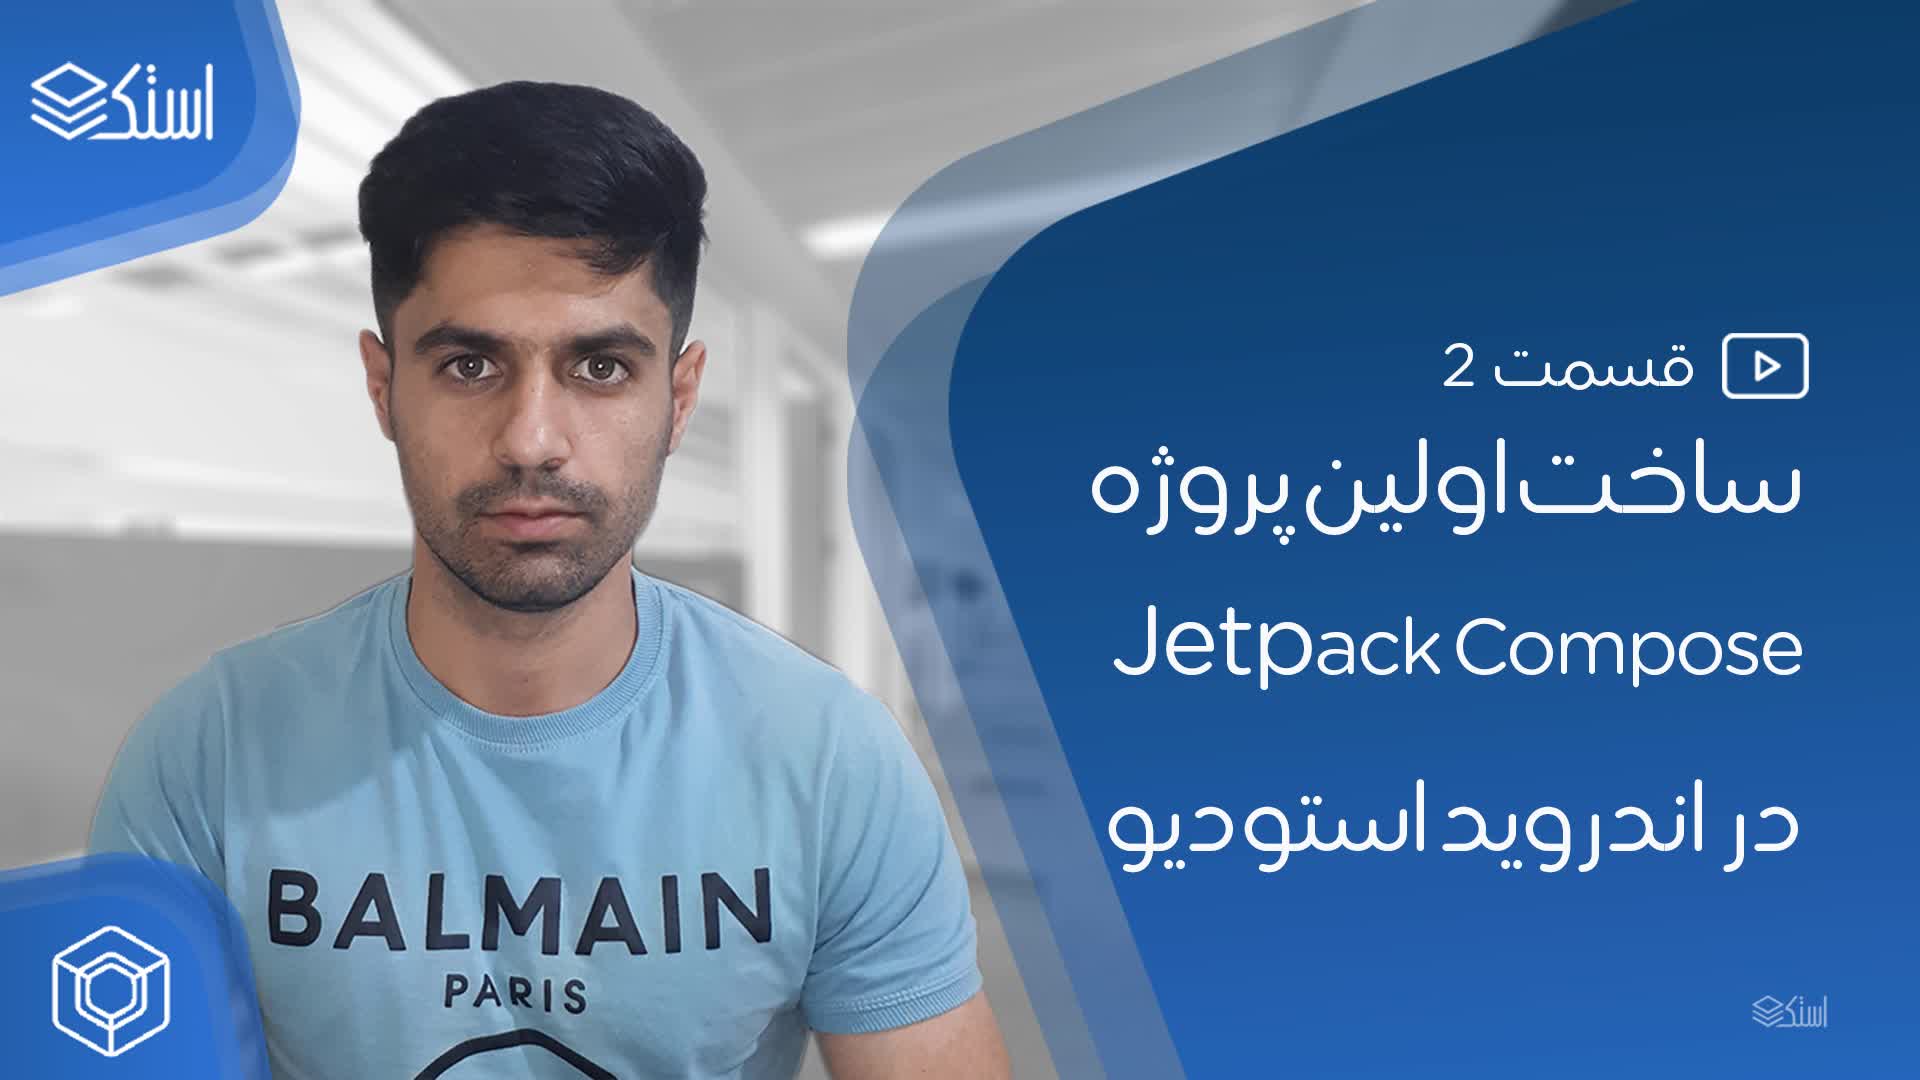 ساخت اولین پروژه Jetpack Compose (ویدیو + توضیحات) - قسمت 2 - استک لرن